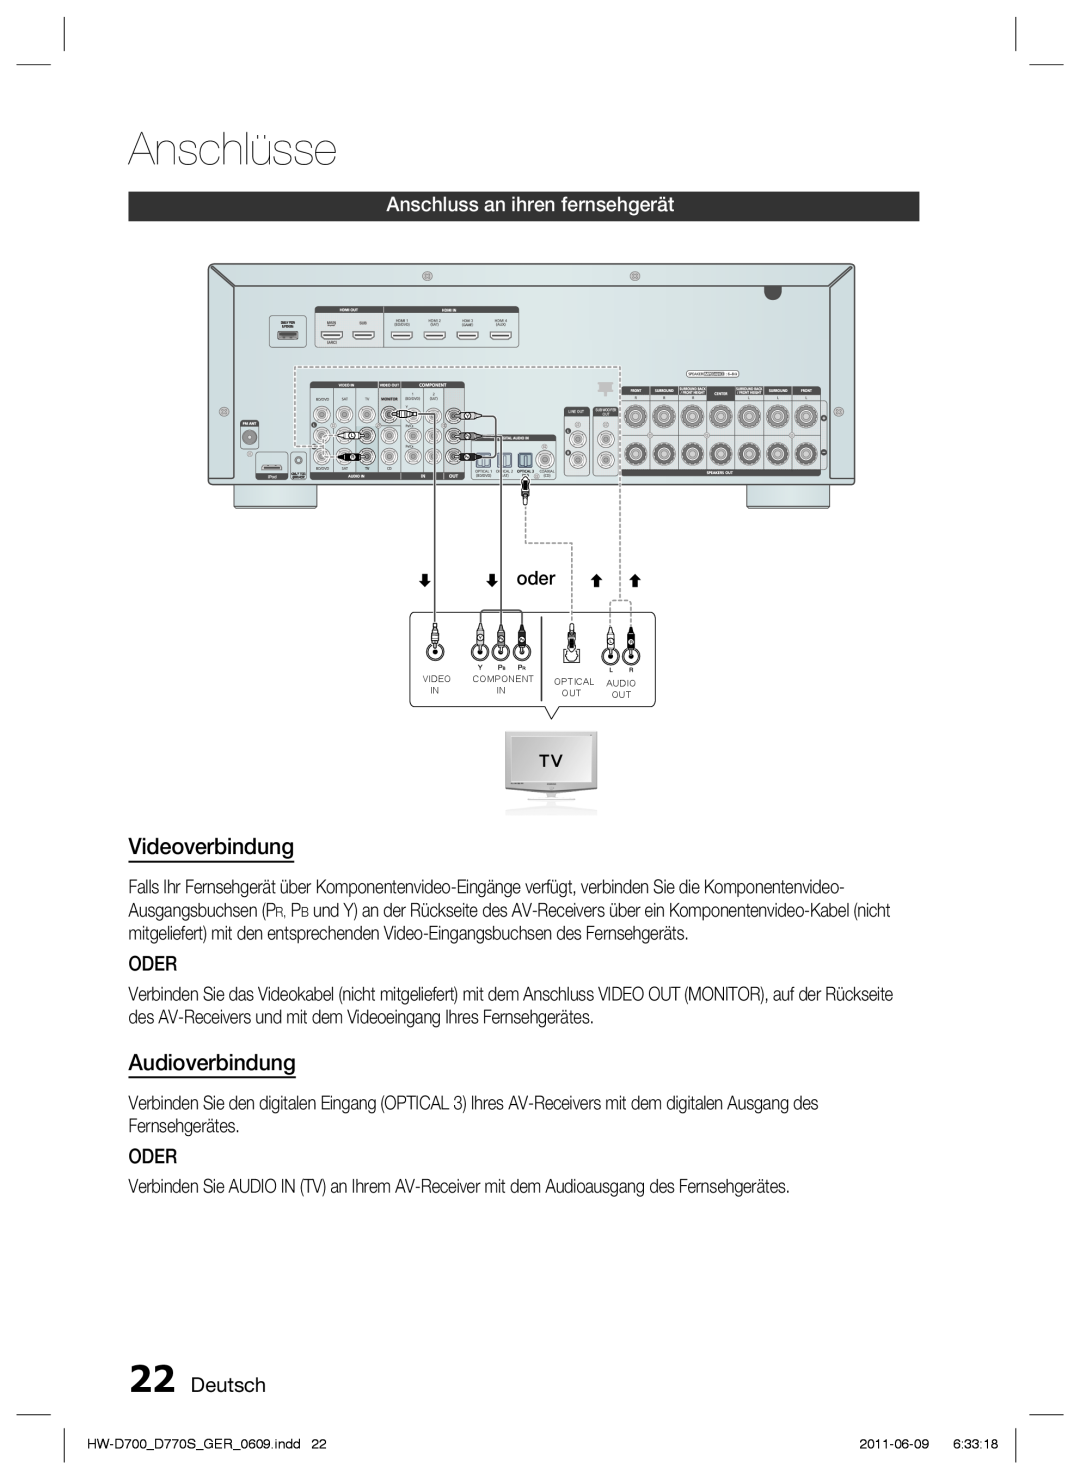 Samsung HW-D770S/EN Videoverbindung, Audioverbindung, Anschluss an ihren fernsehgerät, Oder, Deutsch, oder, Anschlüsse 